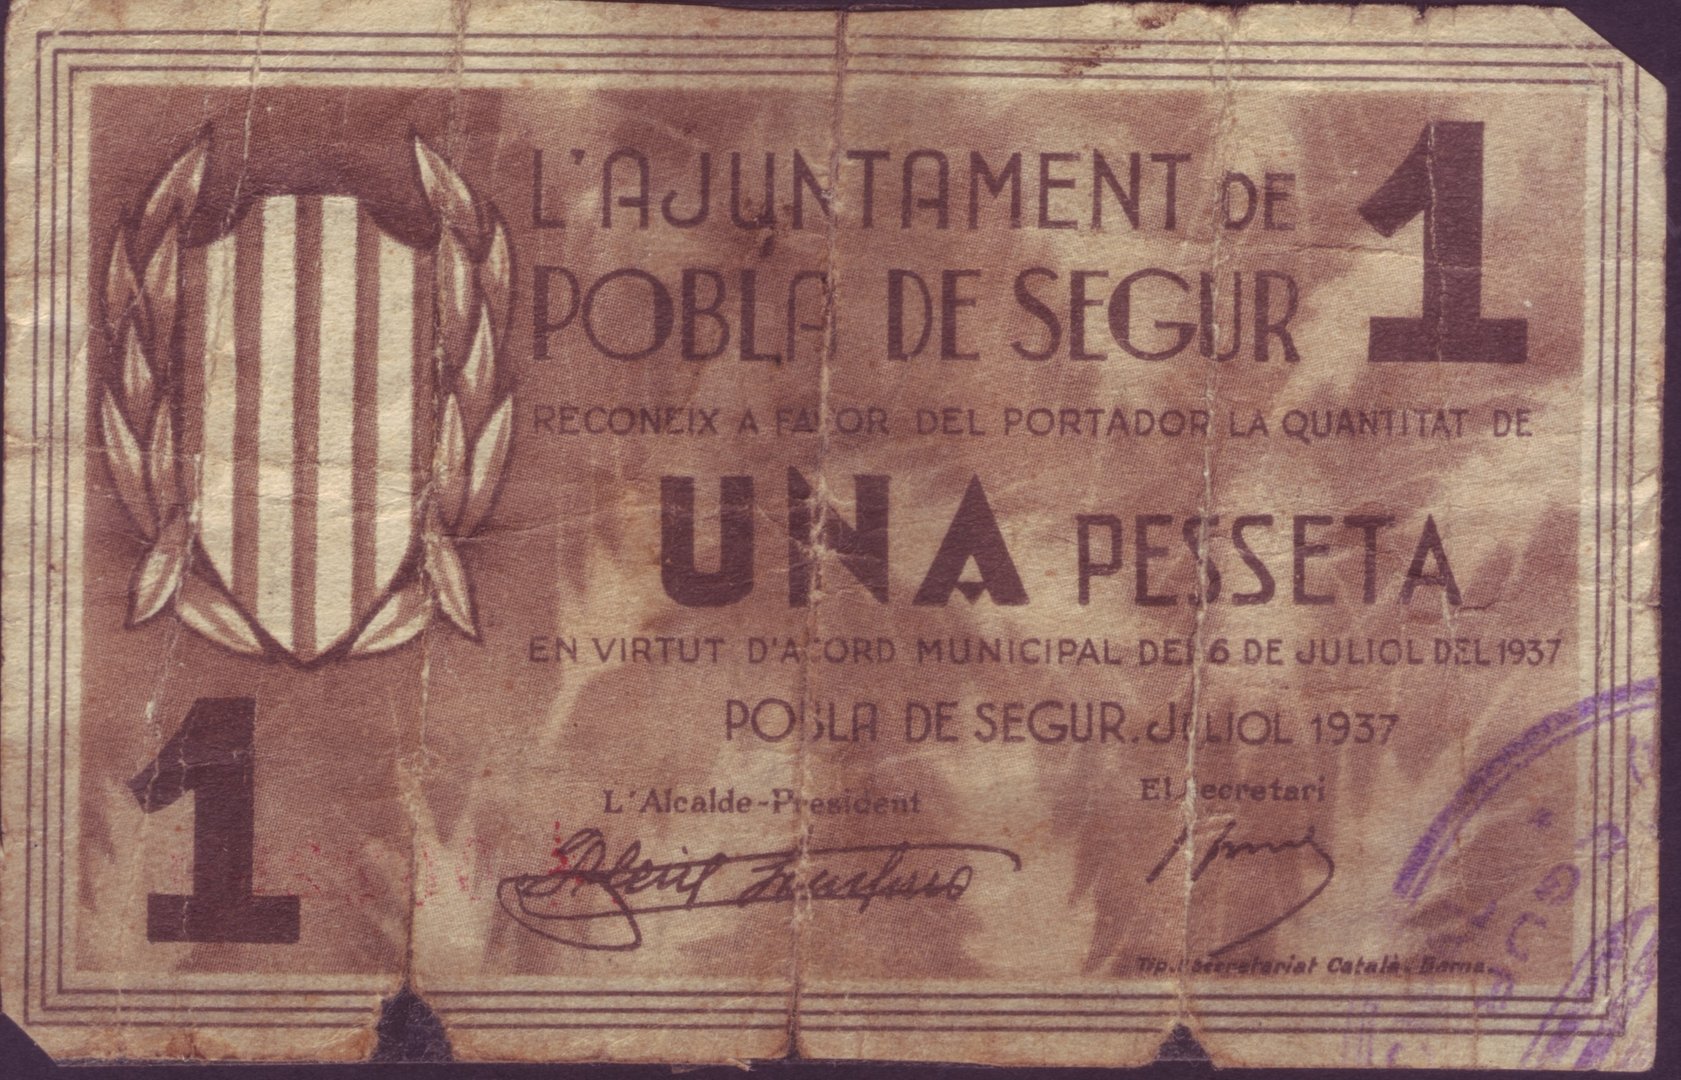 BILLETE LOCAL 1 PTA  POBLA DE SEGUR (LLEIDA). Año 1937 (pegado con celo)     BILL0015k_POBLADESEGUR